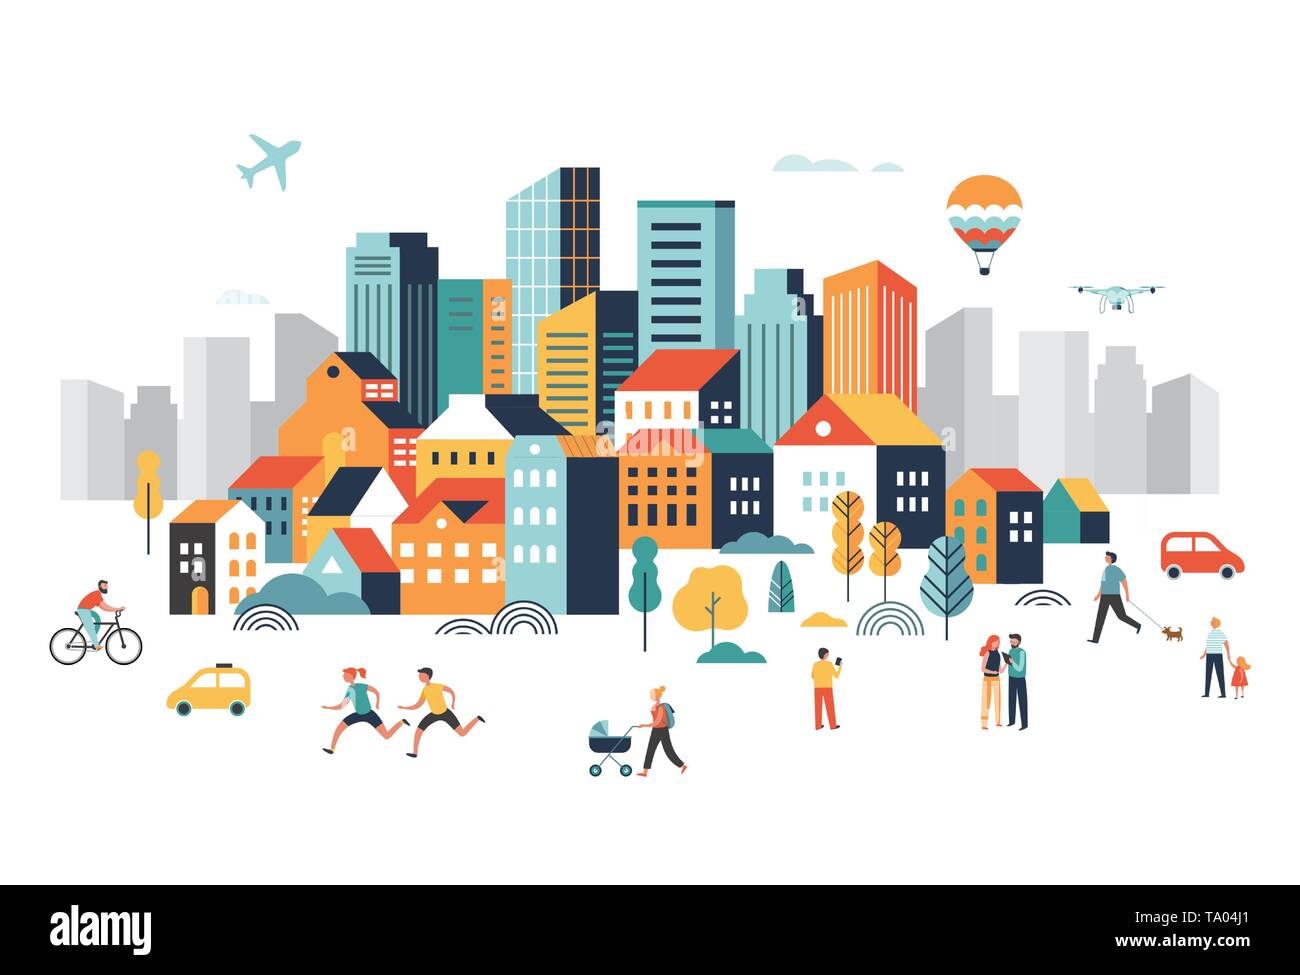 Smart City, centre-ville paysage avec de nombreuses capacités, un avion vole dans le ciel et les gens marcher, courir dans le parc. Illustration de Vecteur